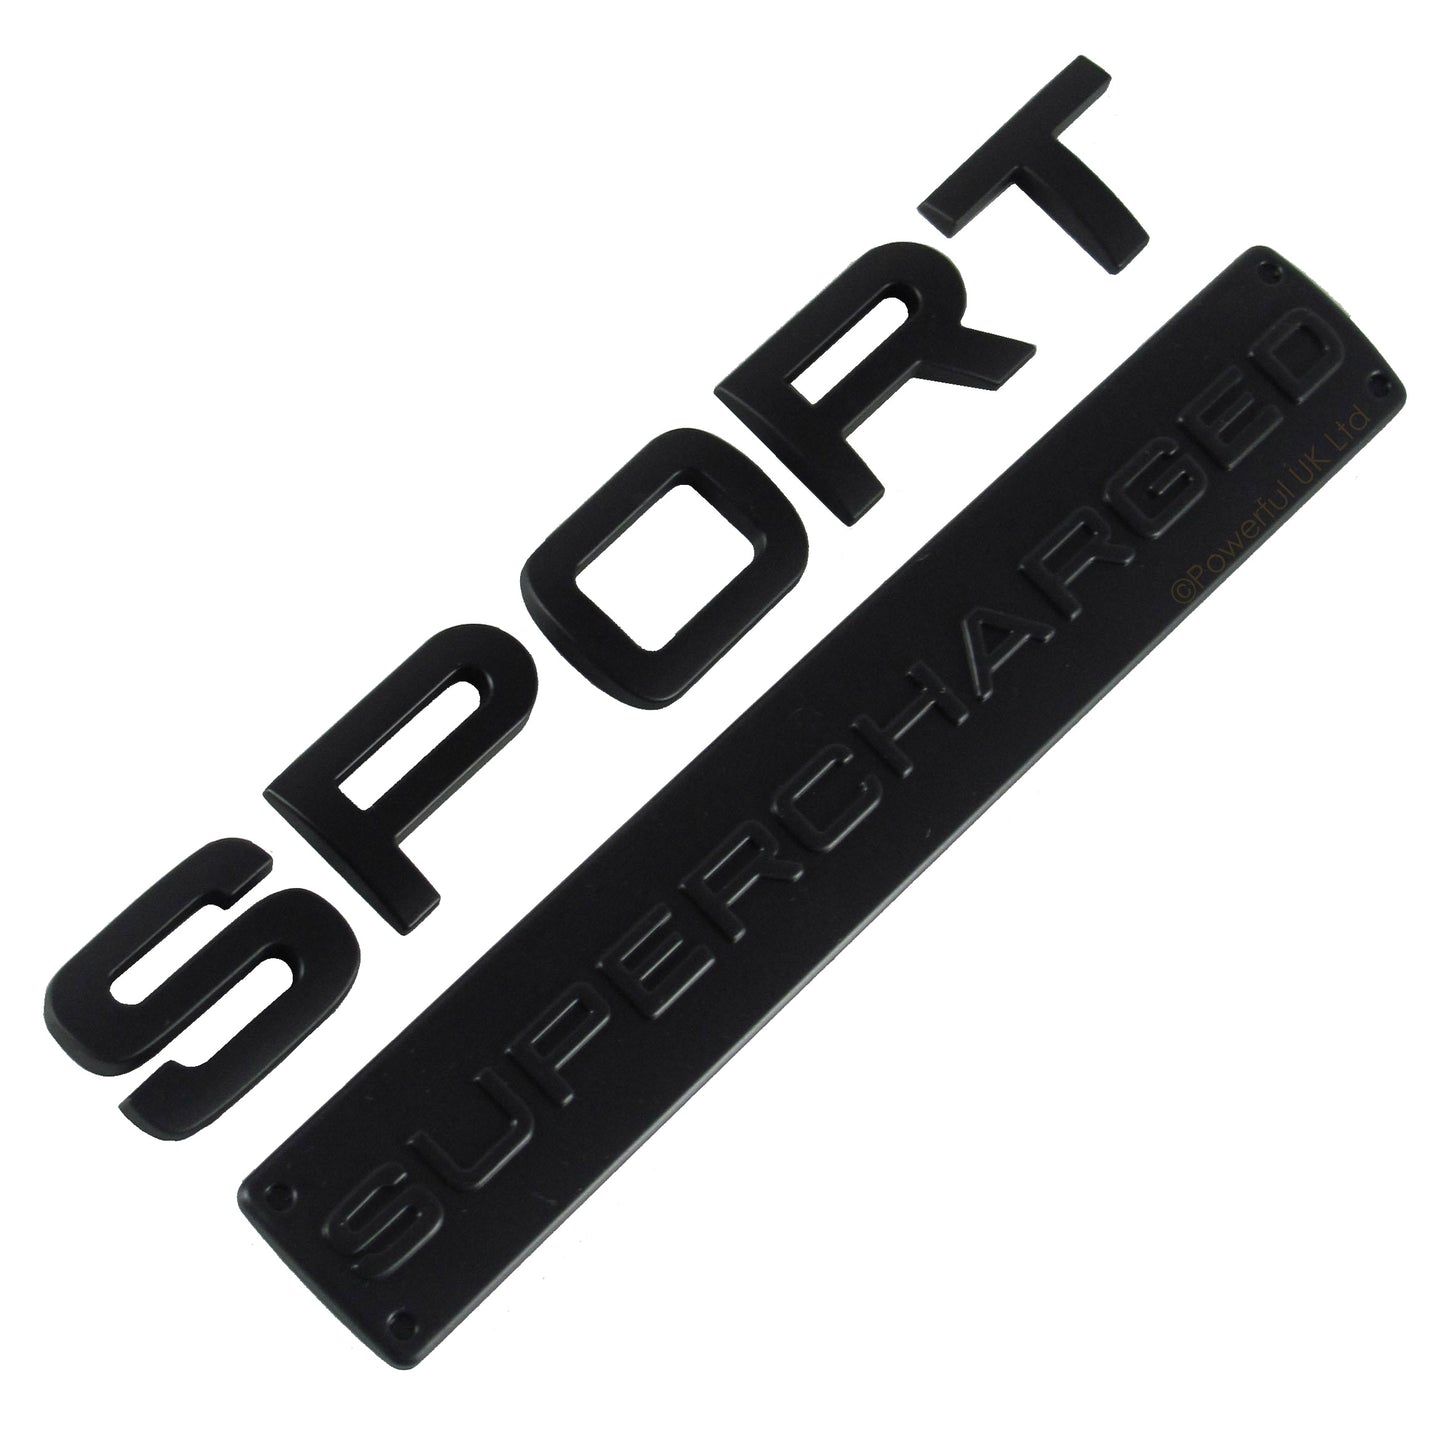 Matt Black Supercharged & Sport tailgate badge for Range Rover - Matt Black